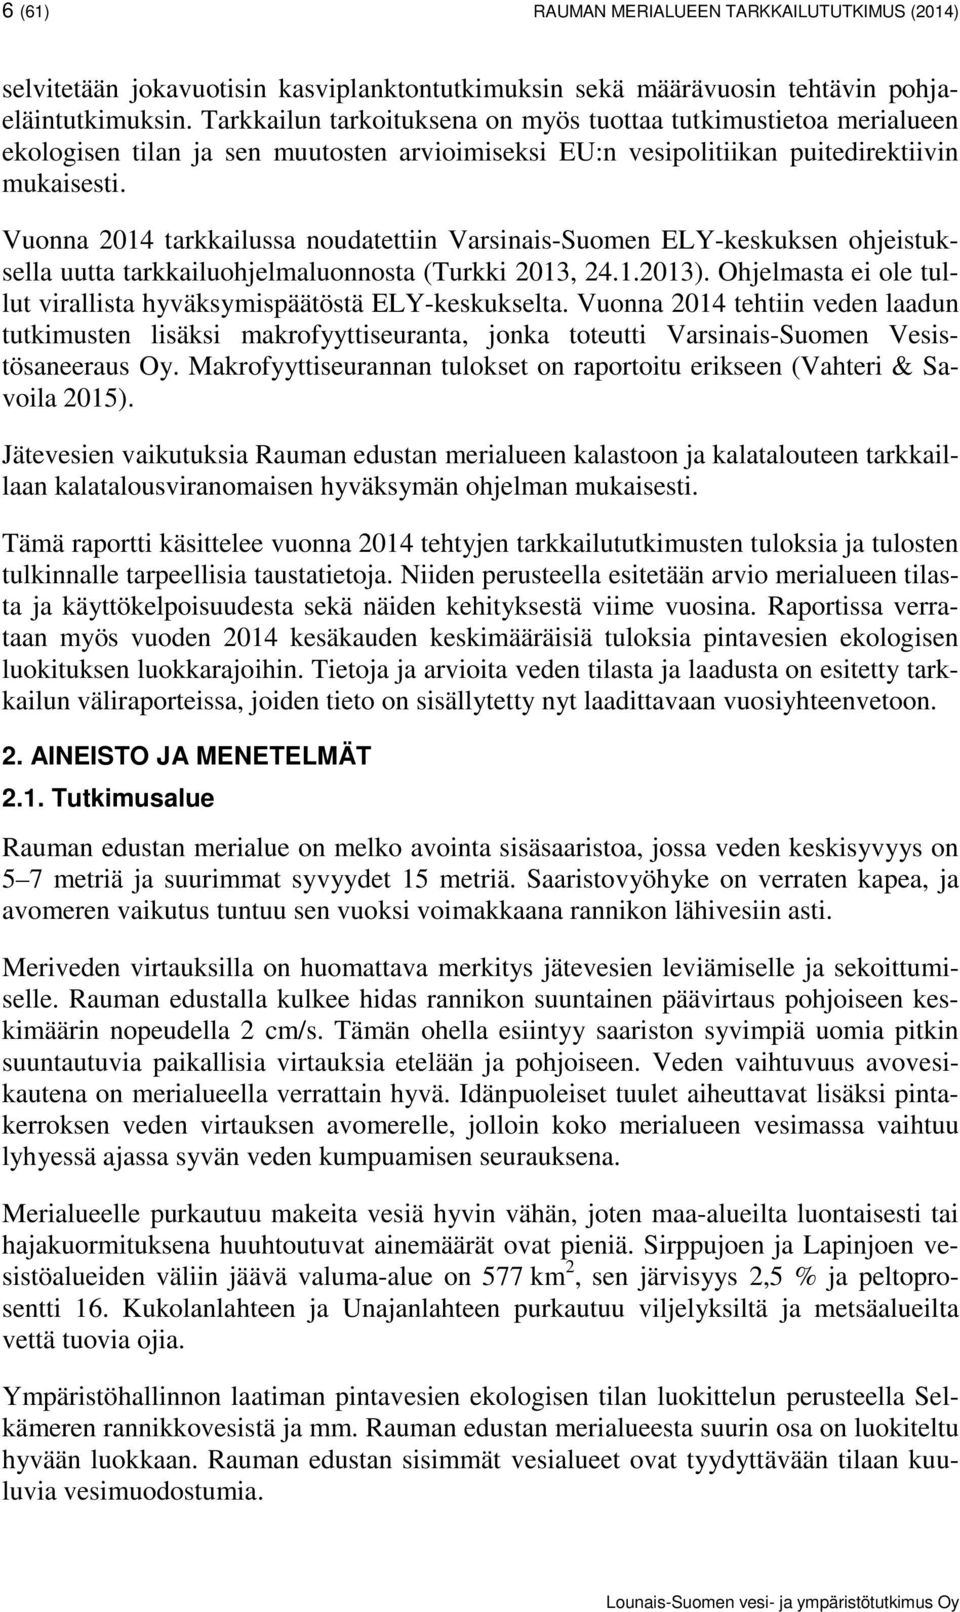 Vuonna 2014 tarkkailussa noudatettiin Varsinais-Suomen ELY-keskuksen ohjeistuksella uutta tarkkailuohjelmaluonnosta (Turkki 2013, 24.1.2013).